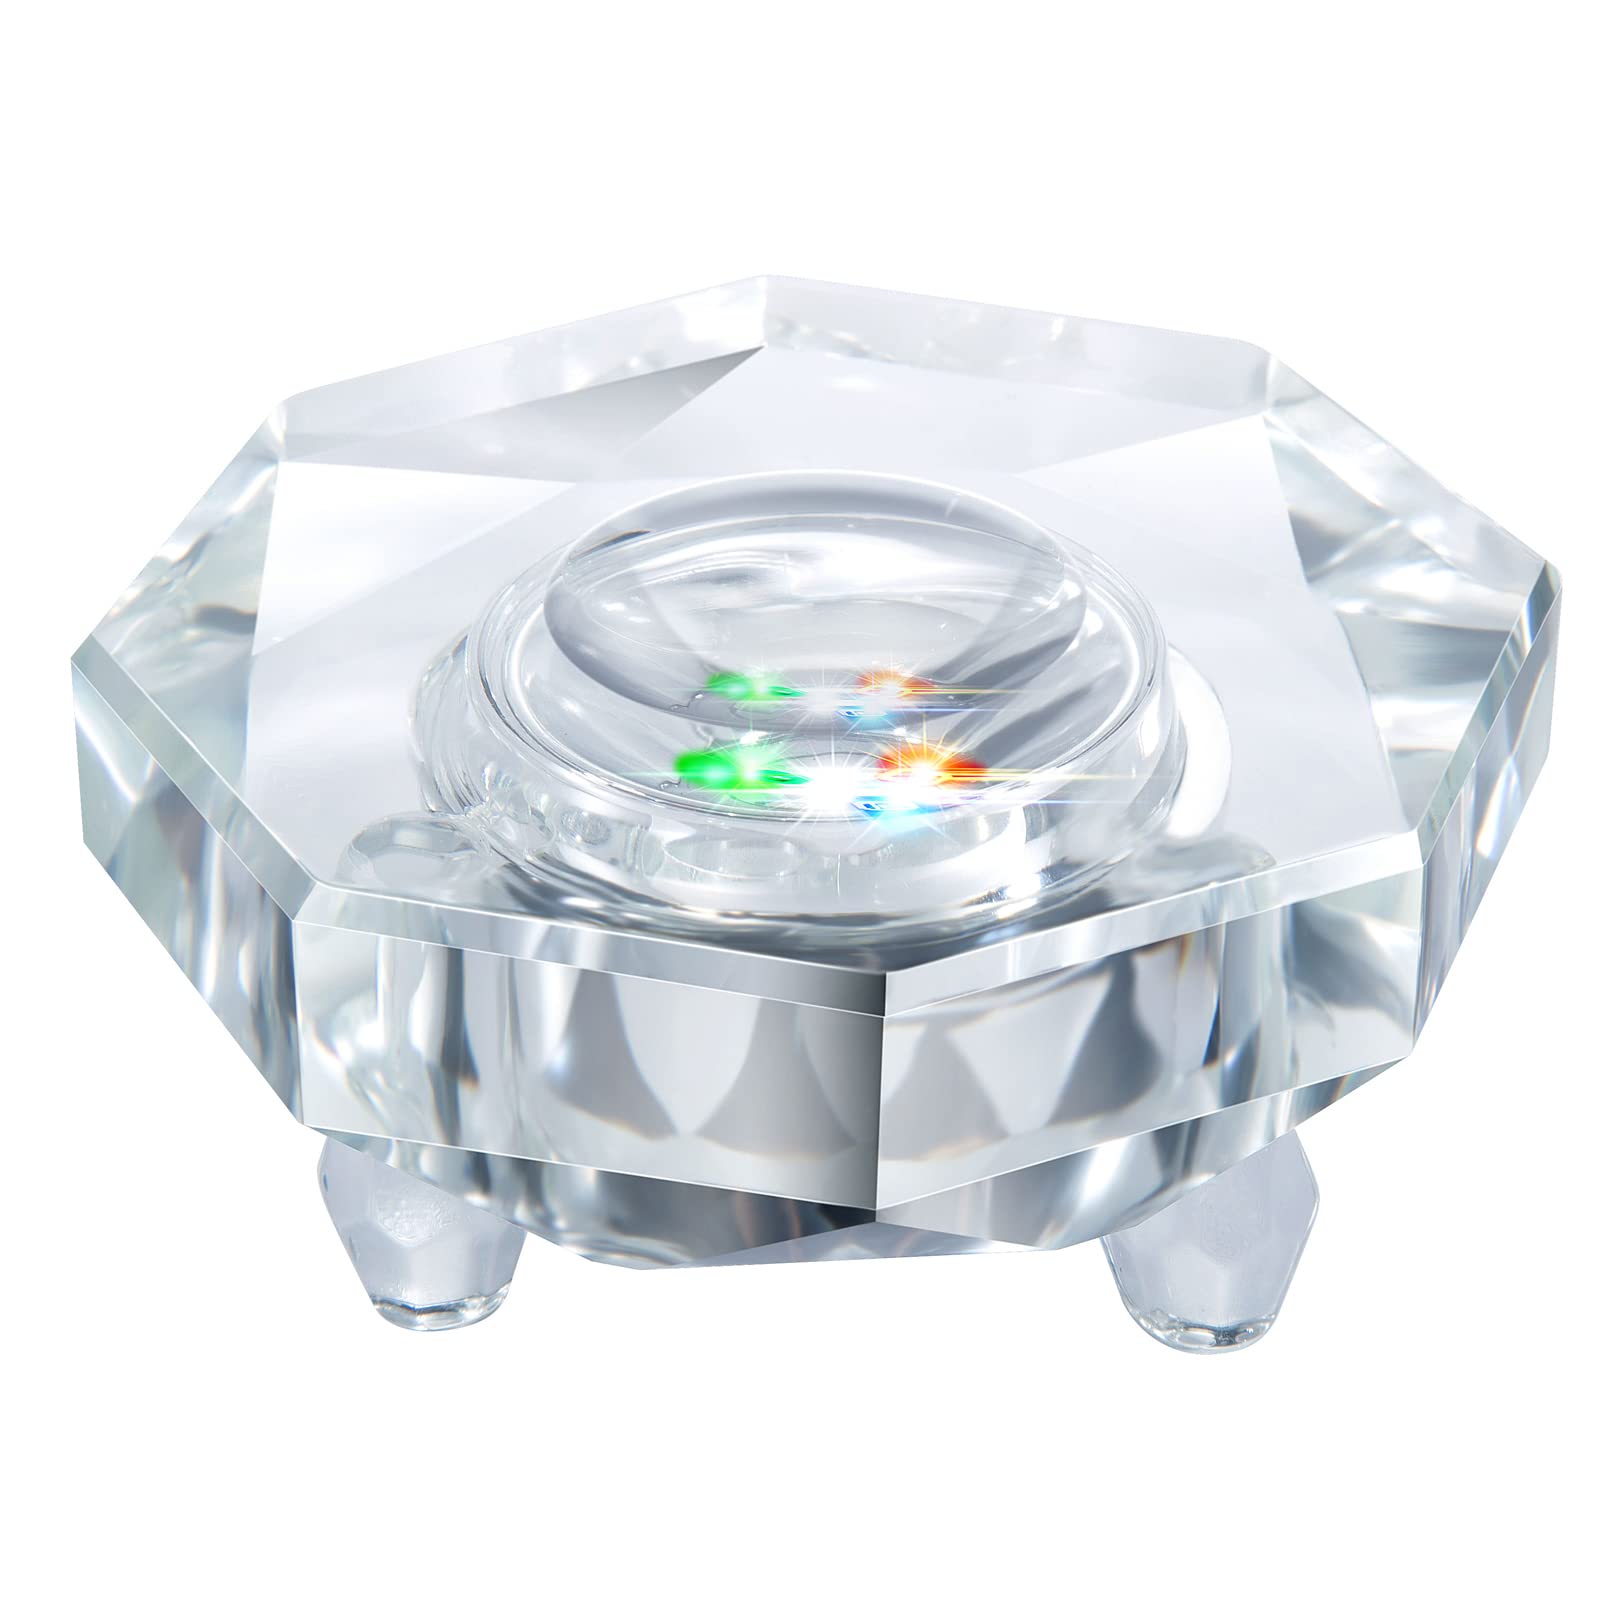 Reikistal Crystal LED Light Base Sphere Holder